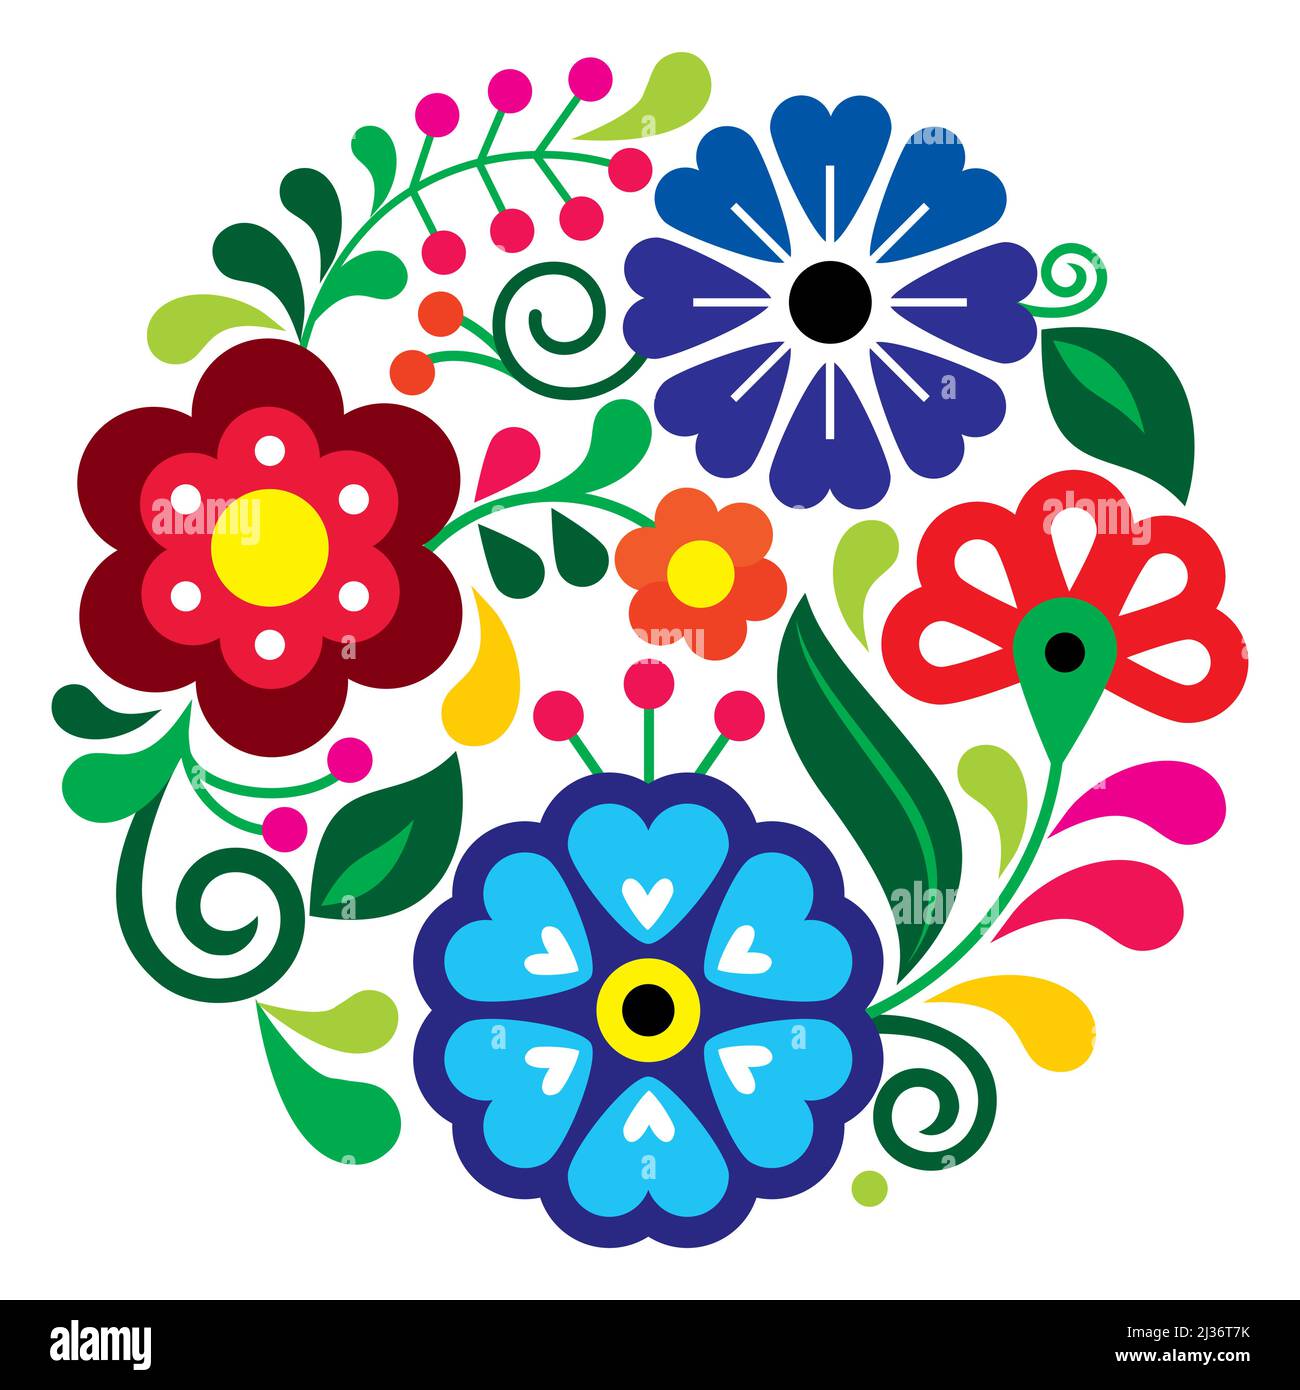 Patter floral mandala de style folklorique mexicain, composition nature en cercle inspirée des motifs de broderie traditionnels du Mexique Illustration de Vecteur